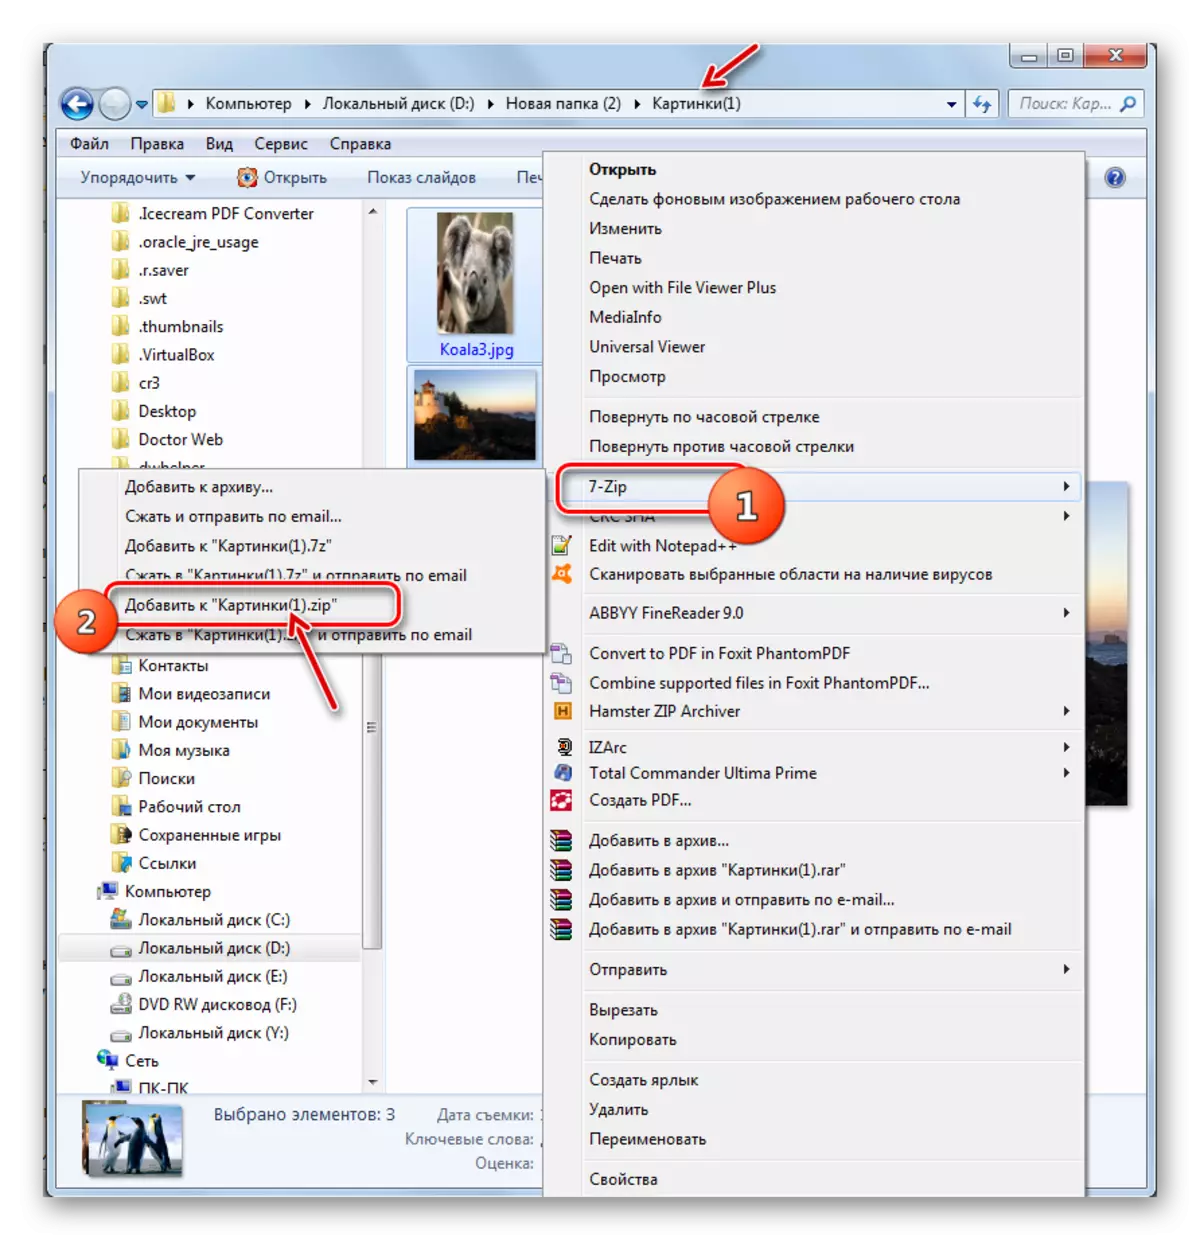 Canjin zuwa ƙirƙirar ZIP Archive ta tsohuwa ta hanyar menu na Windows Explorer a cikin shirin 7-Zip